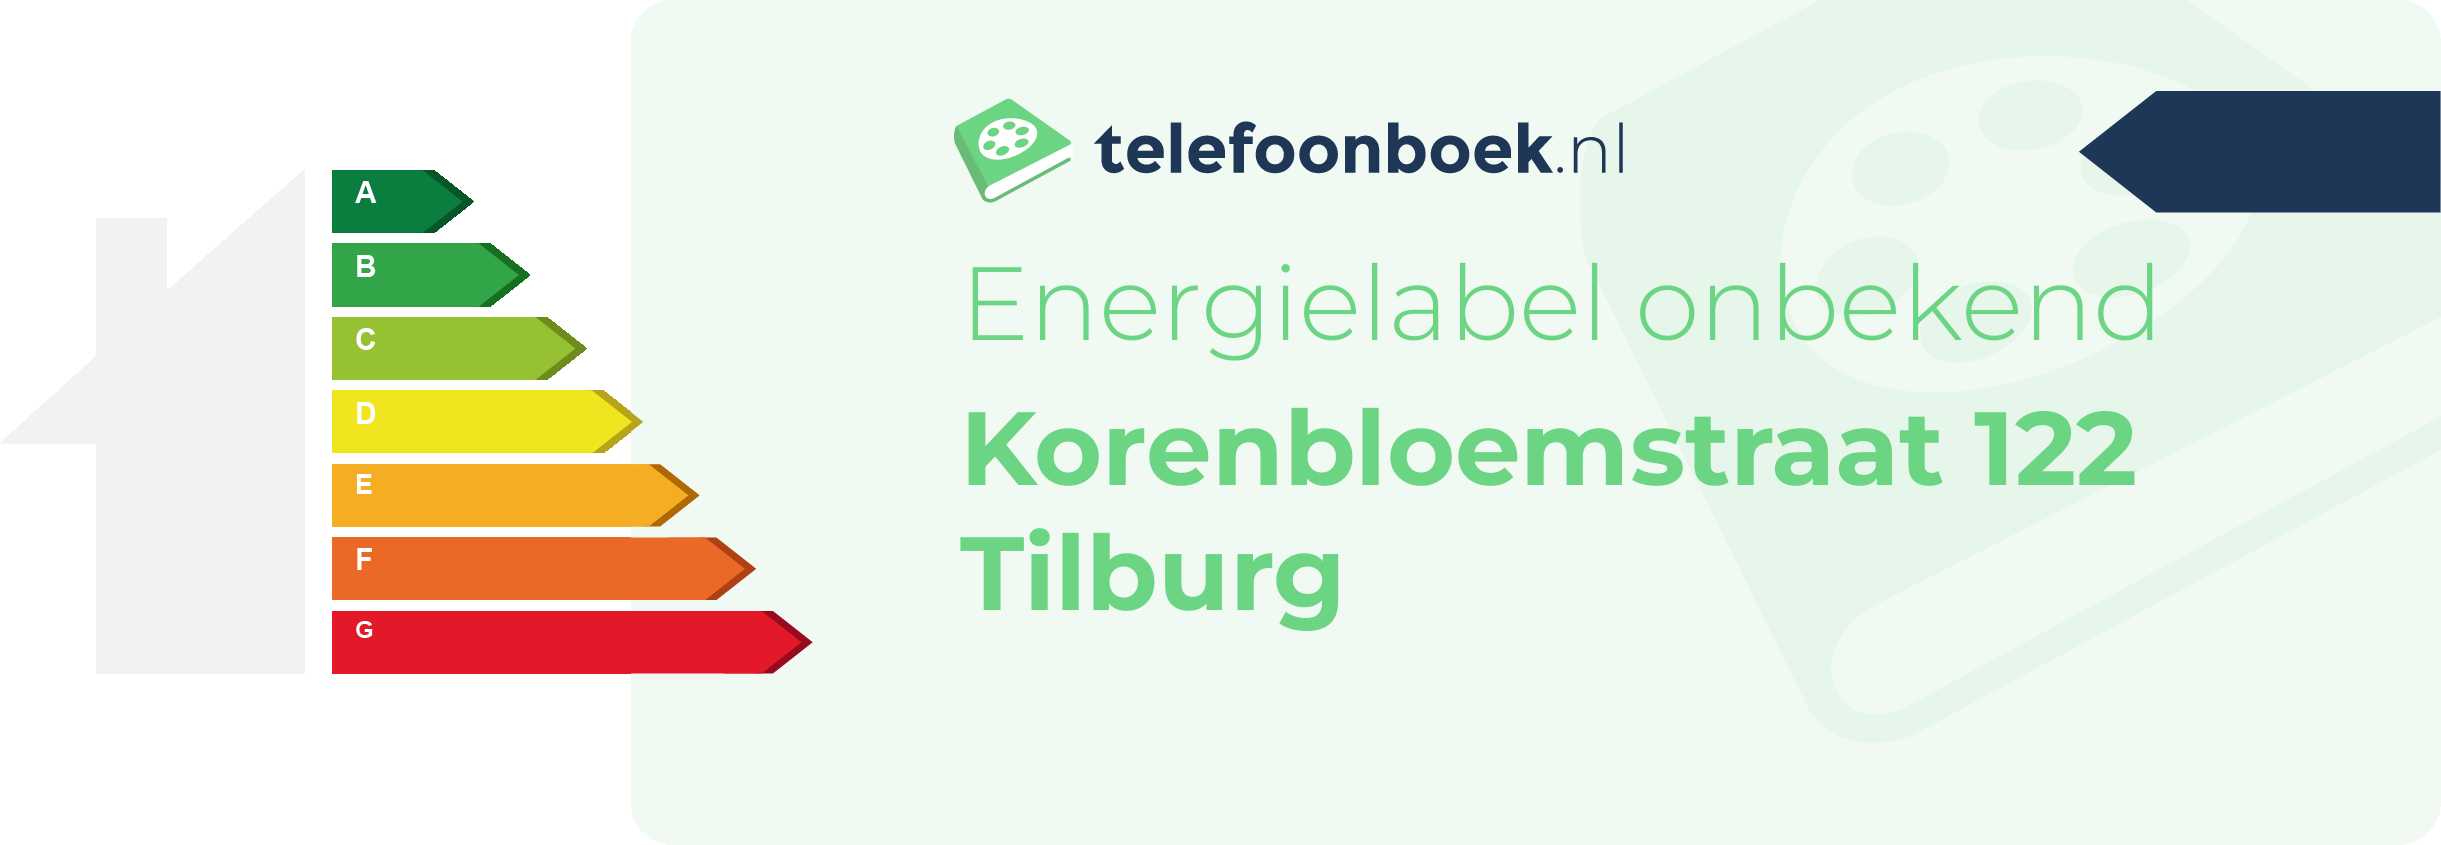 Energielabel Korenbloemstraat 122 Tilburg